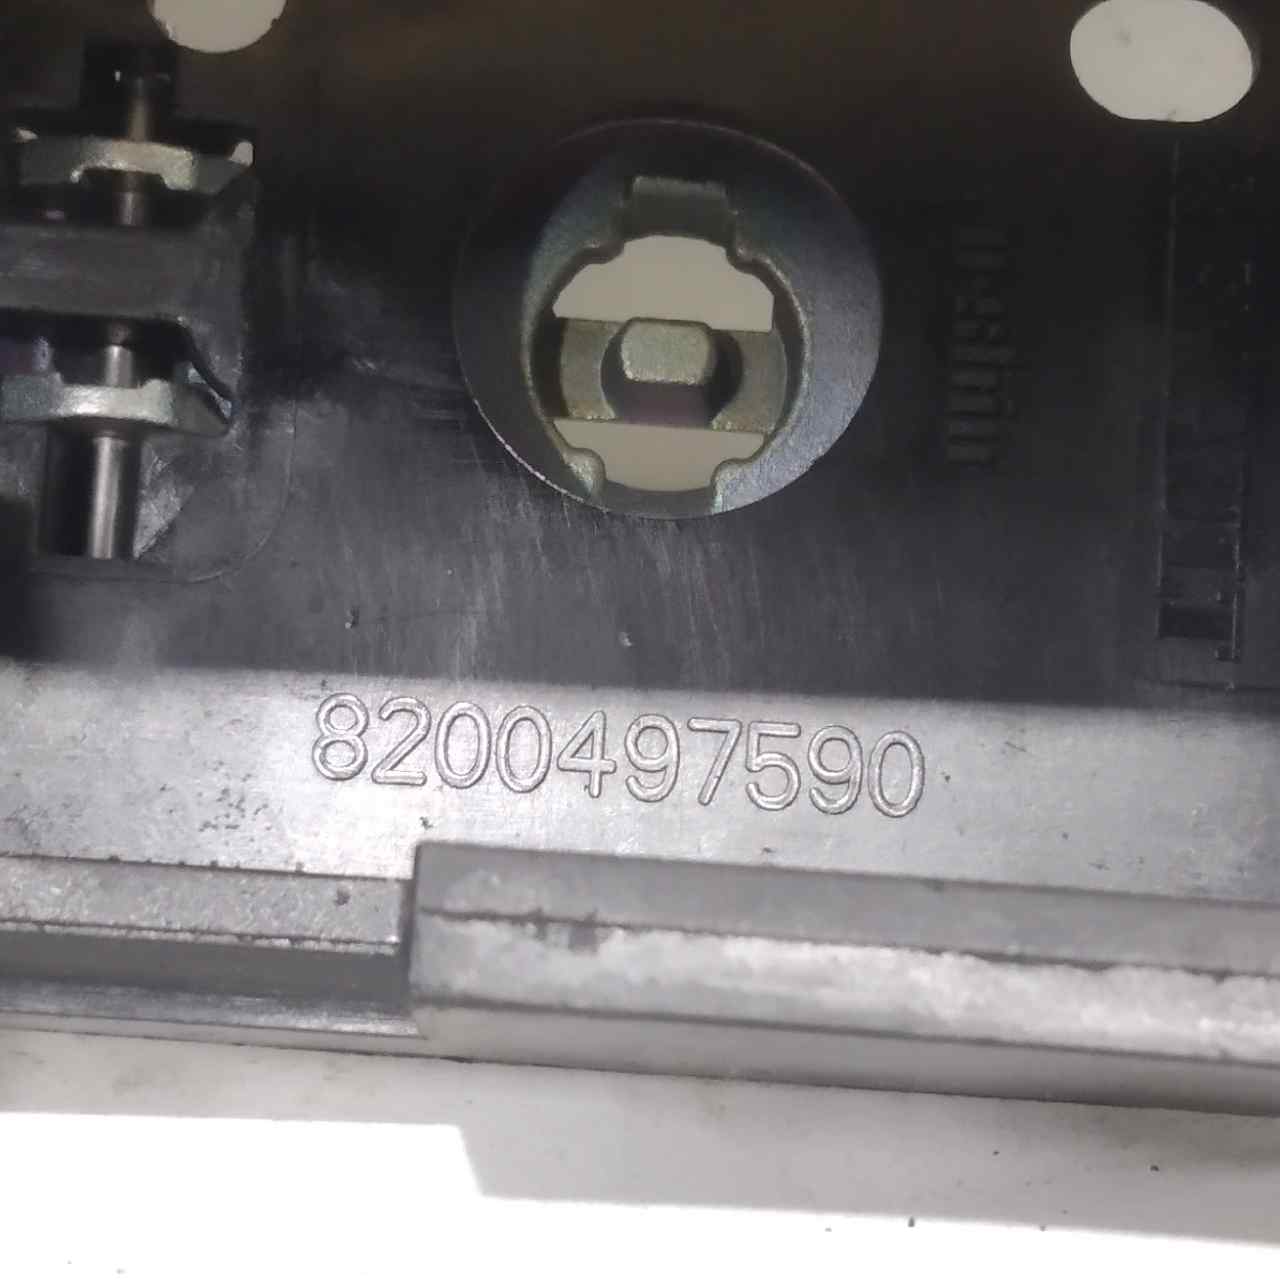 MERCEDES-BENZ Citan W415 (2012-2021) Front Right Door Exterior Handle 8200497590 24982600